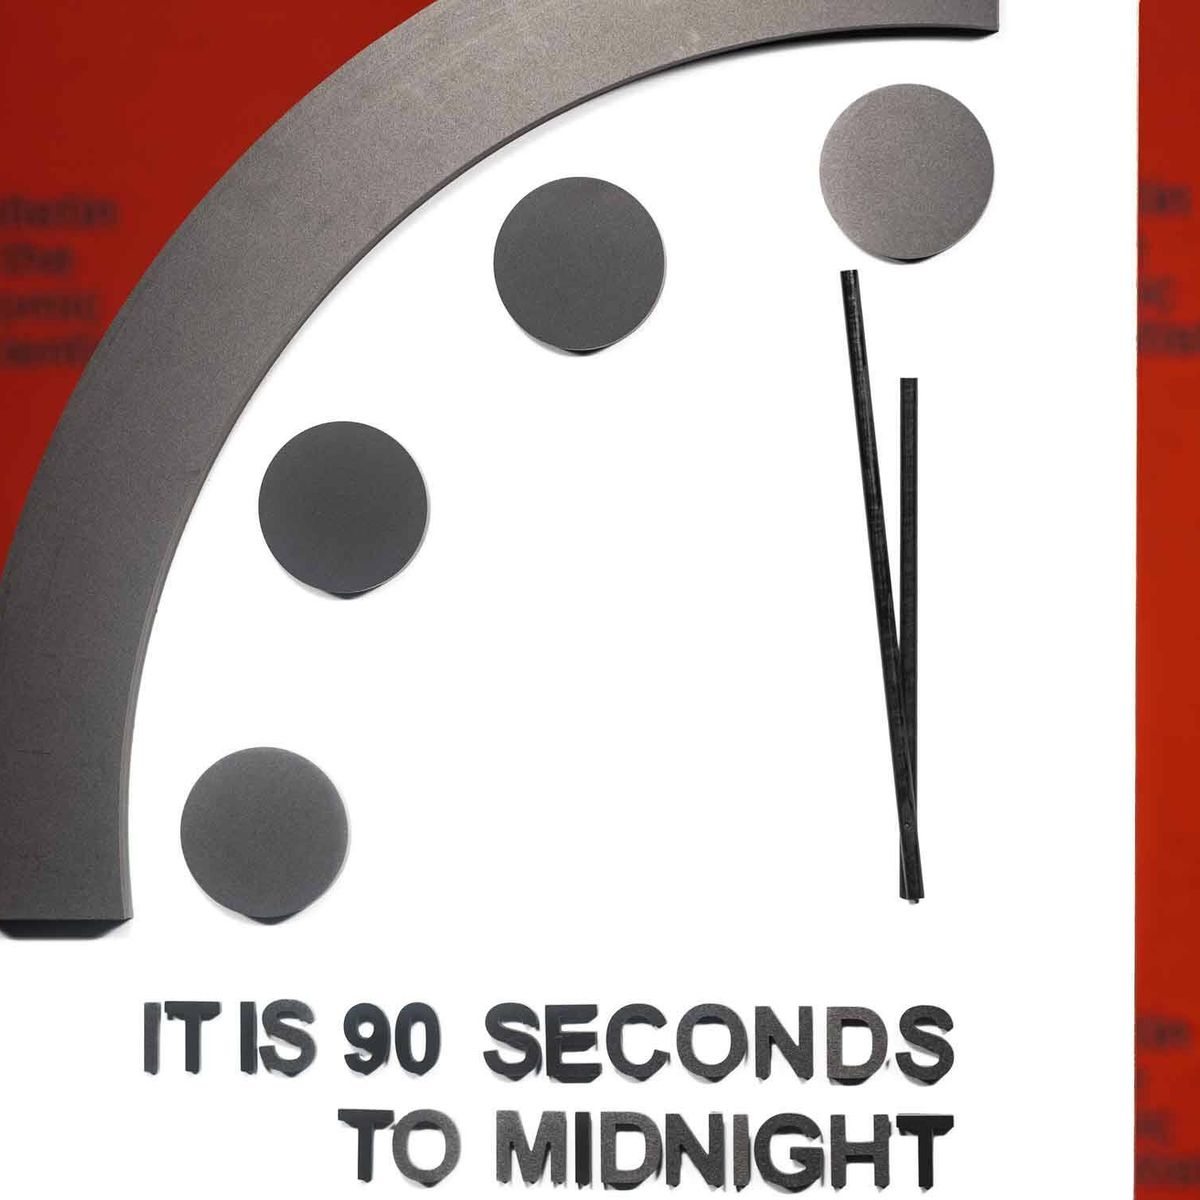 El Reloj del Apocalipsis nos sitúa a 90 segundos del fin del mundo